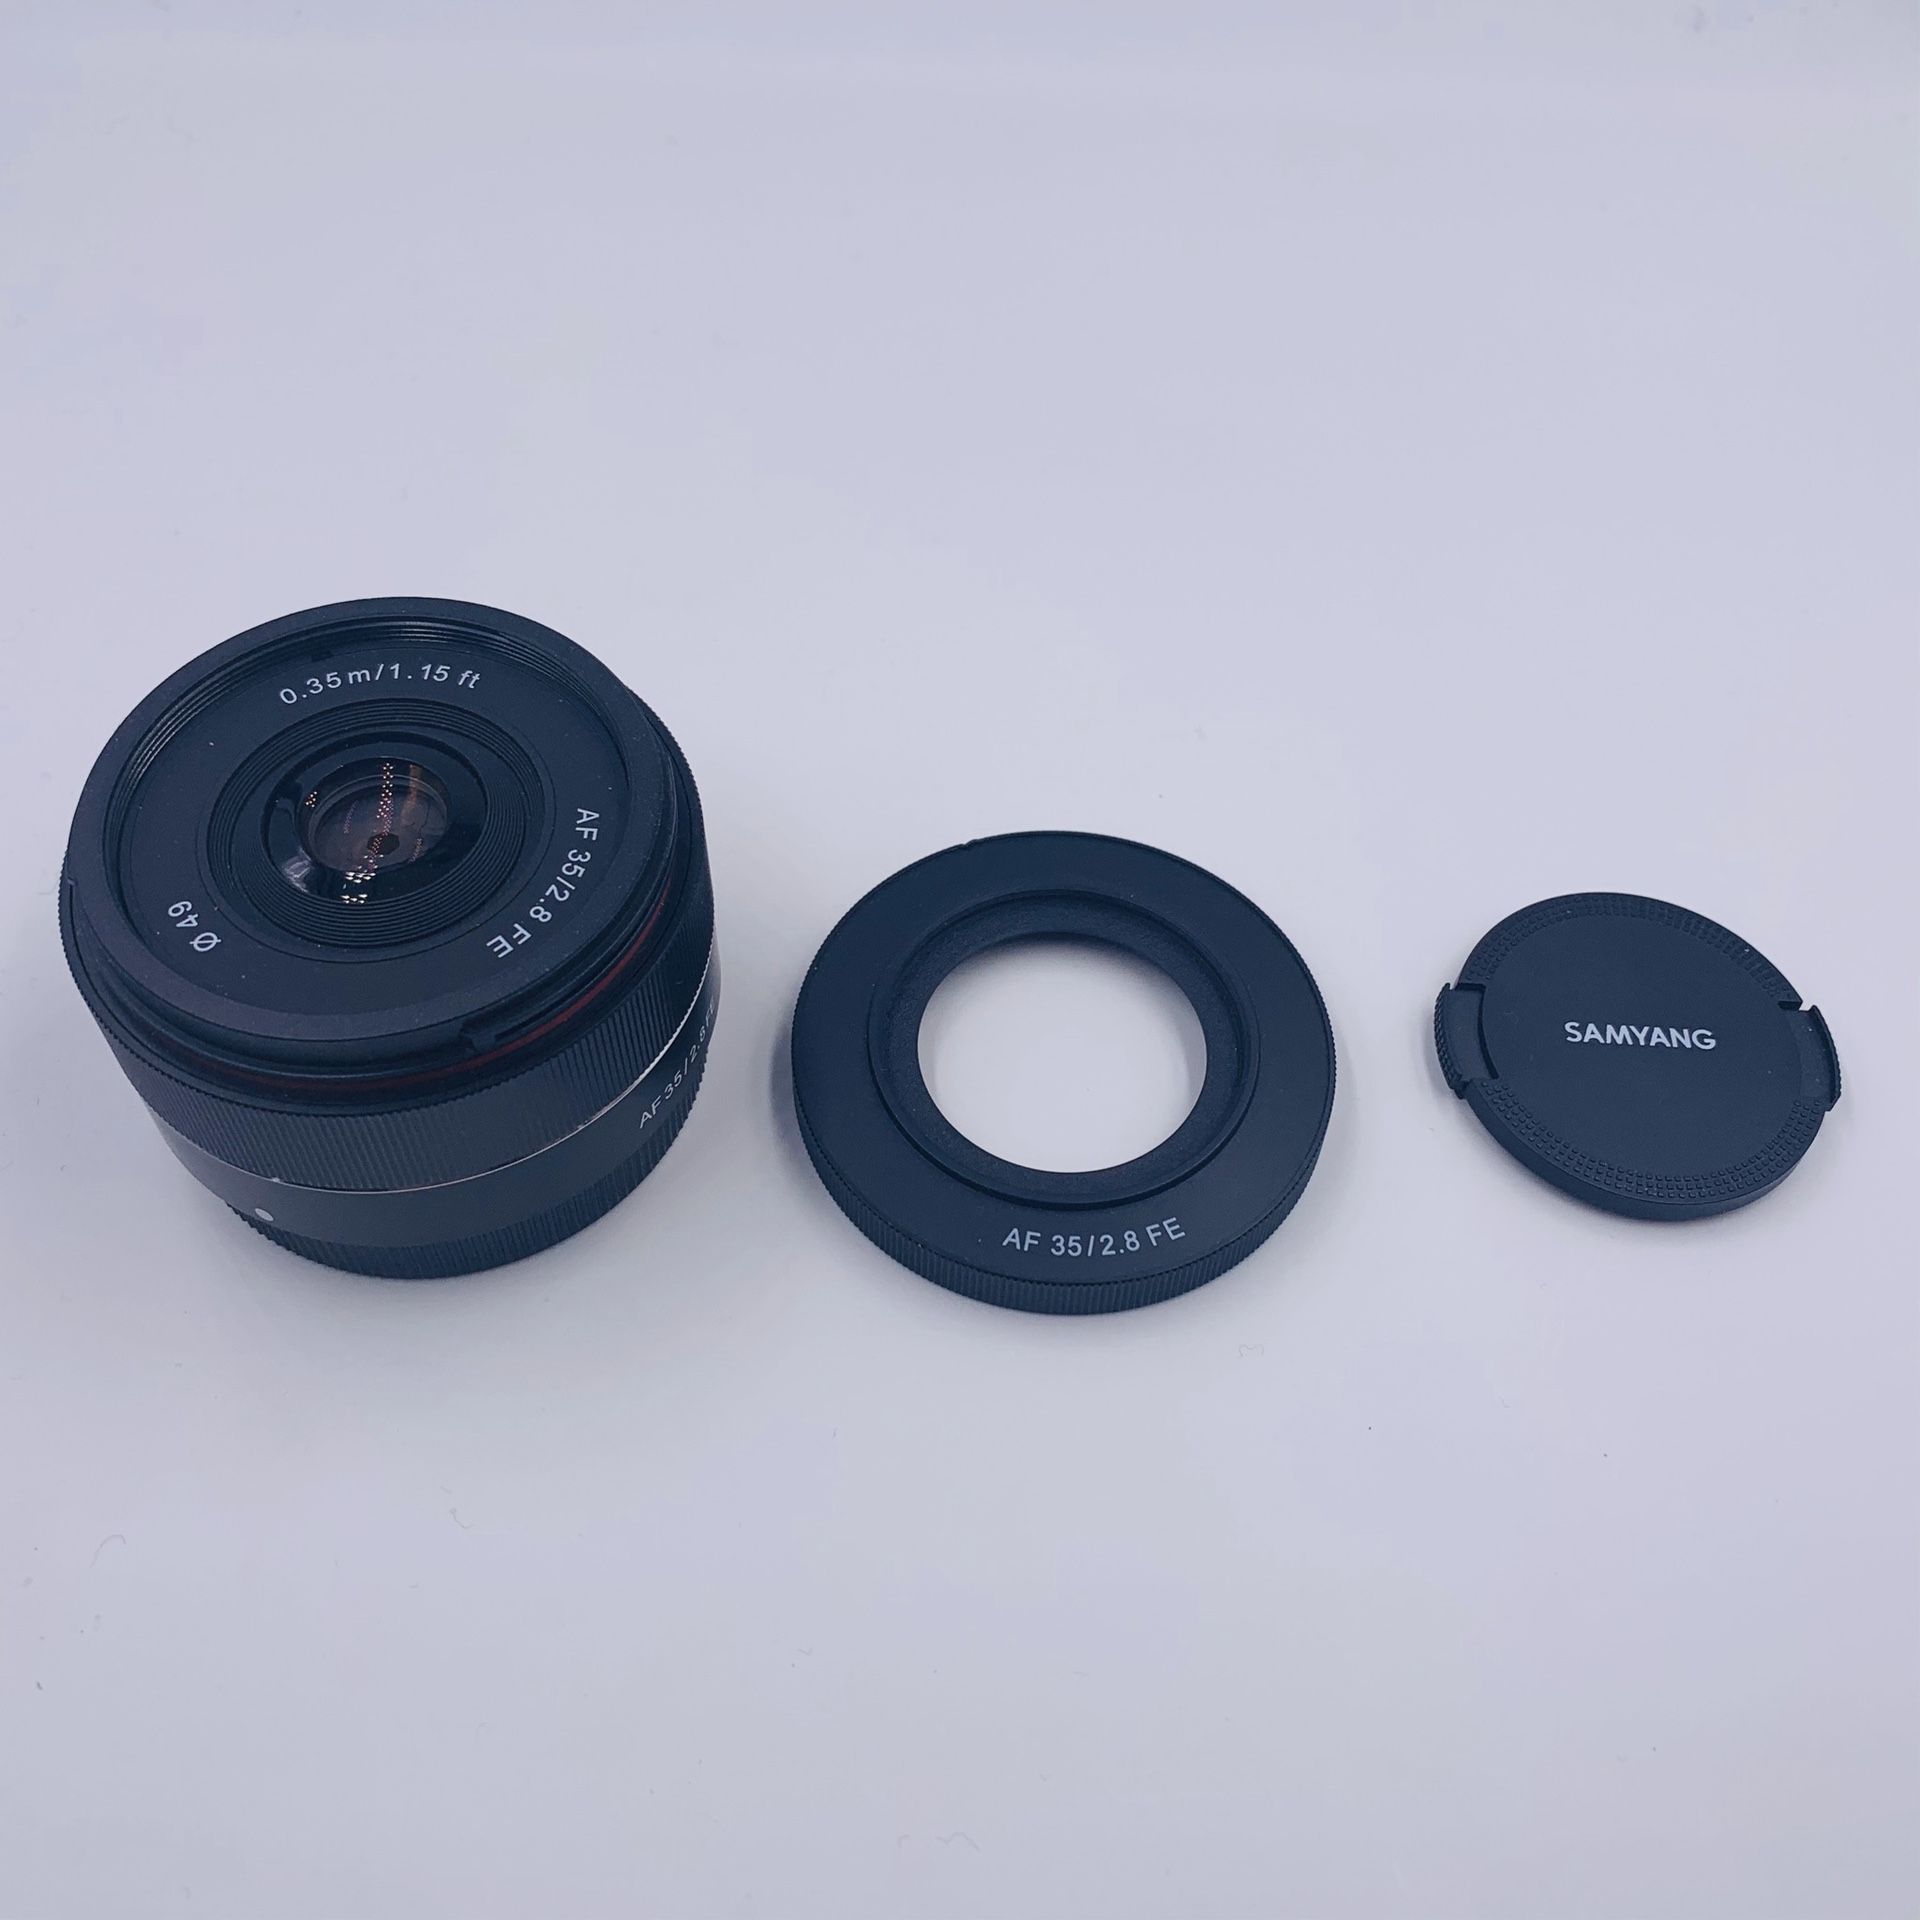 Samyang 35mm F2.8 for Sony FE